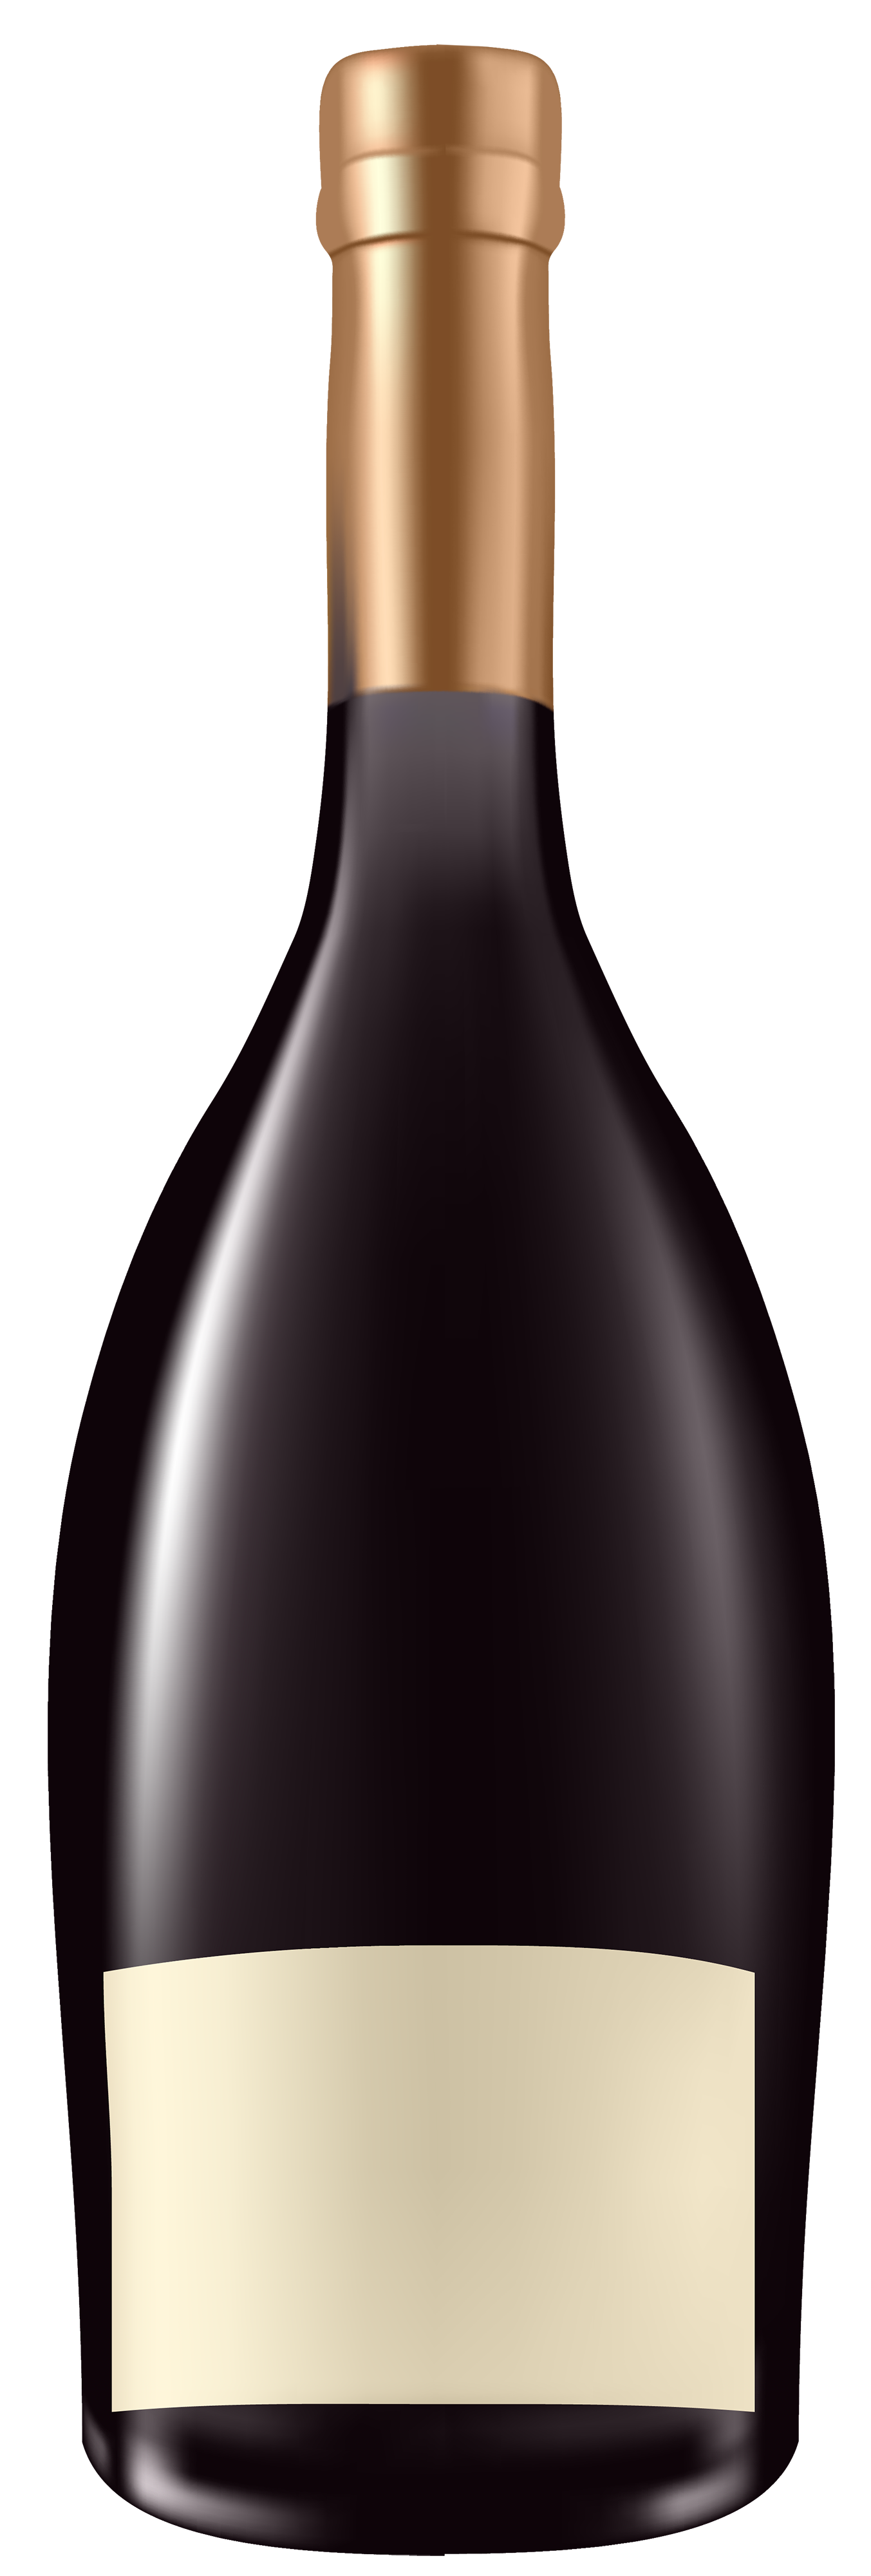 Alcohol Bottle PNG Clipart - Best WEB Clipart